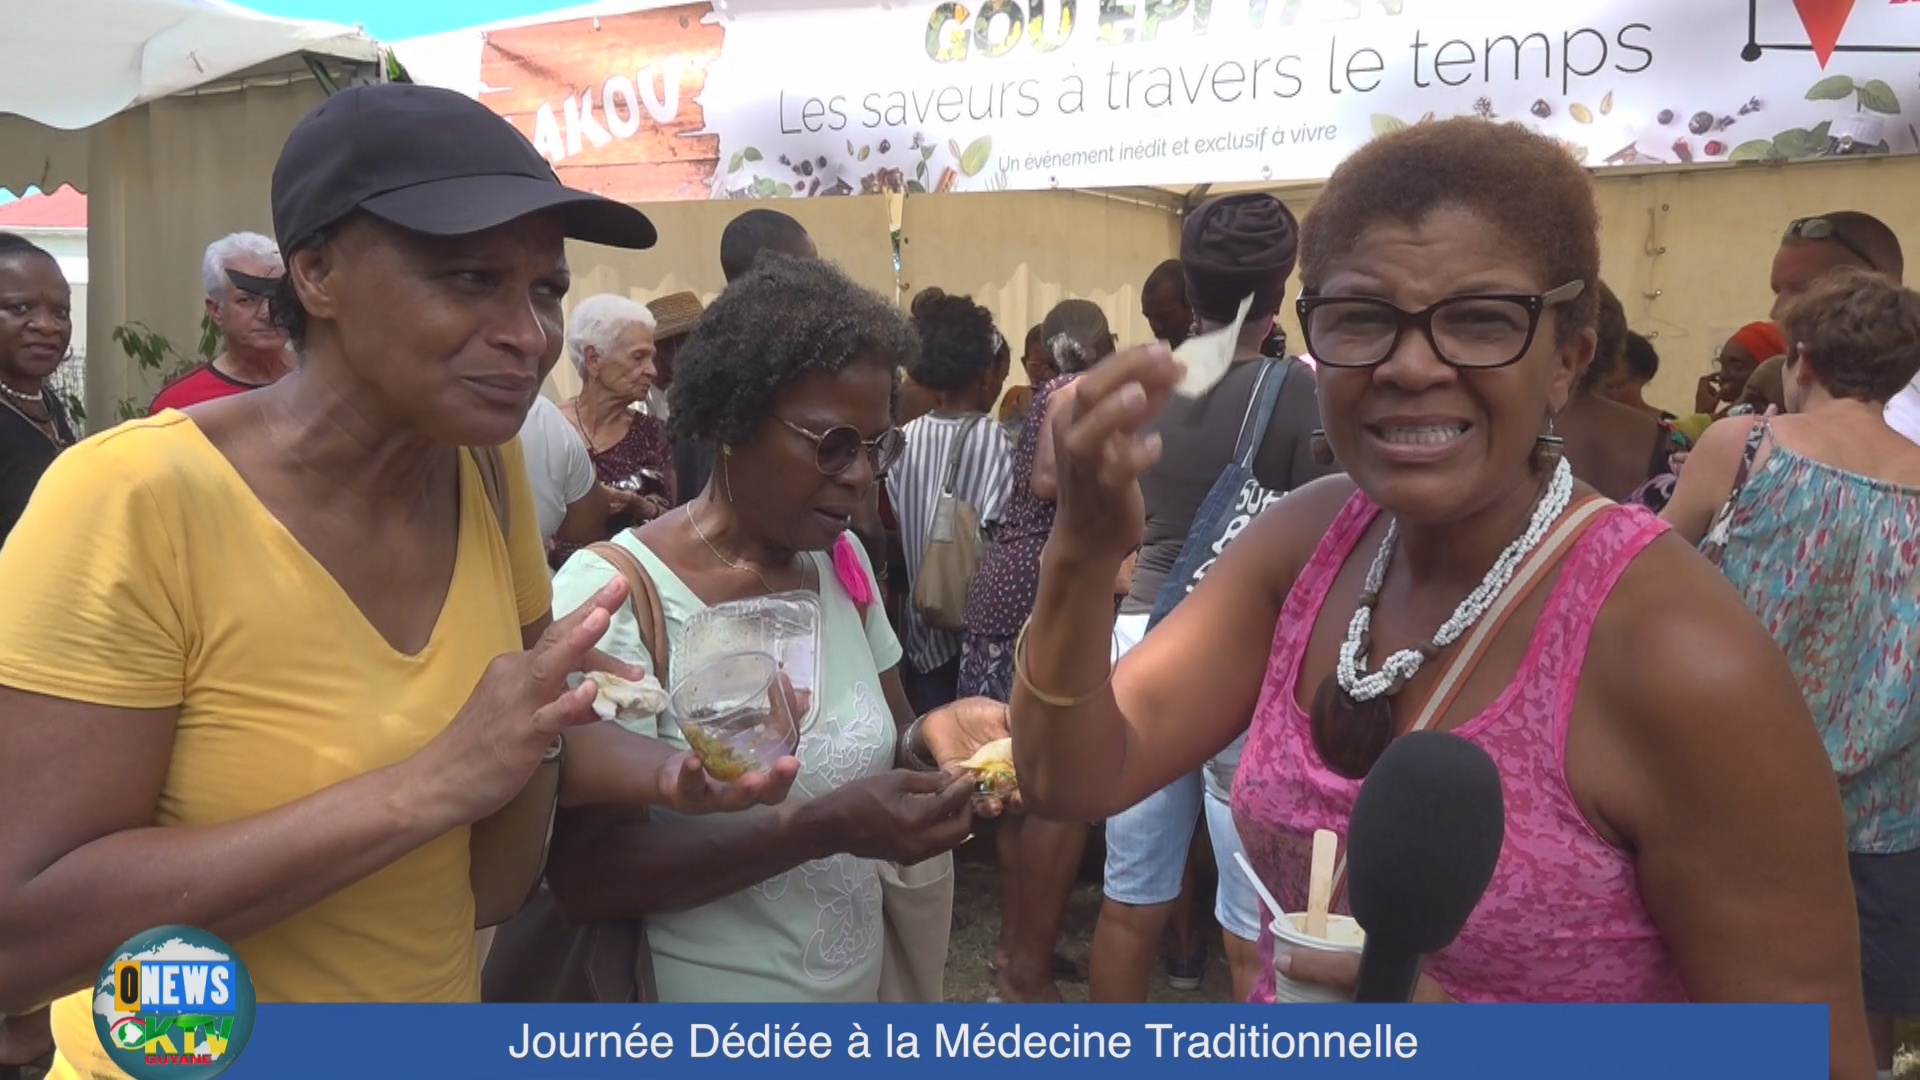 [Vidéo] Onews Guadeloupe. Journée dédiée à la médecine traditionnelle